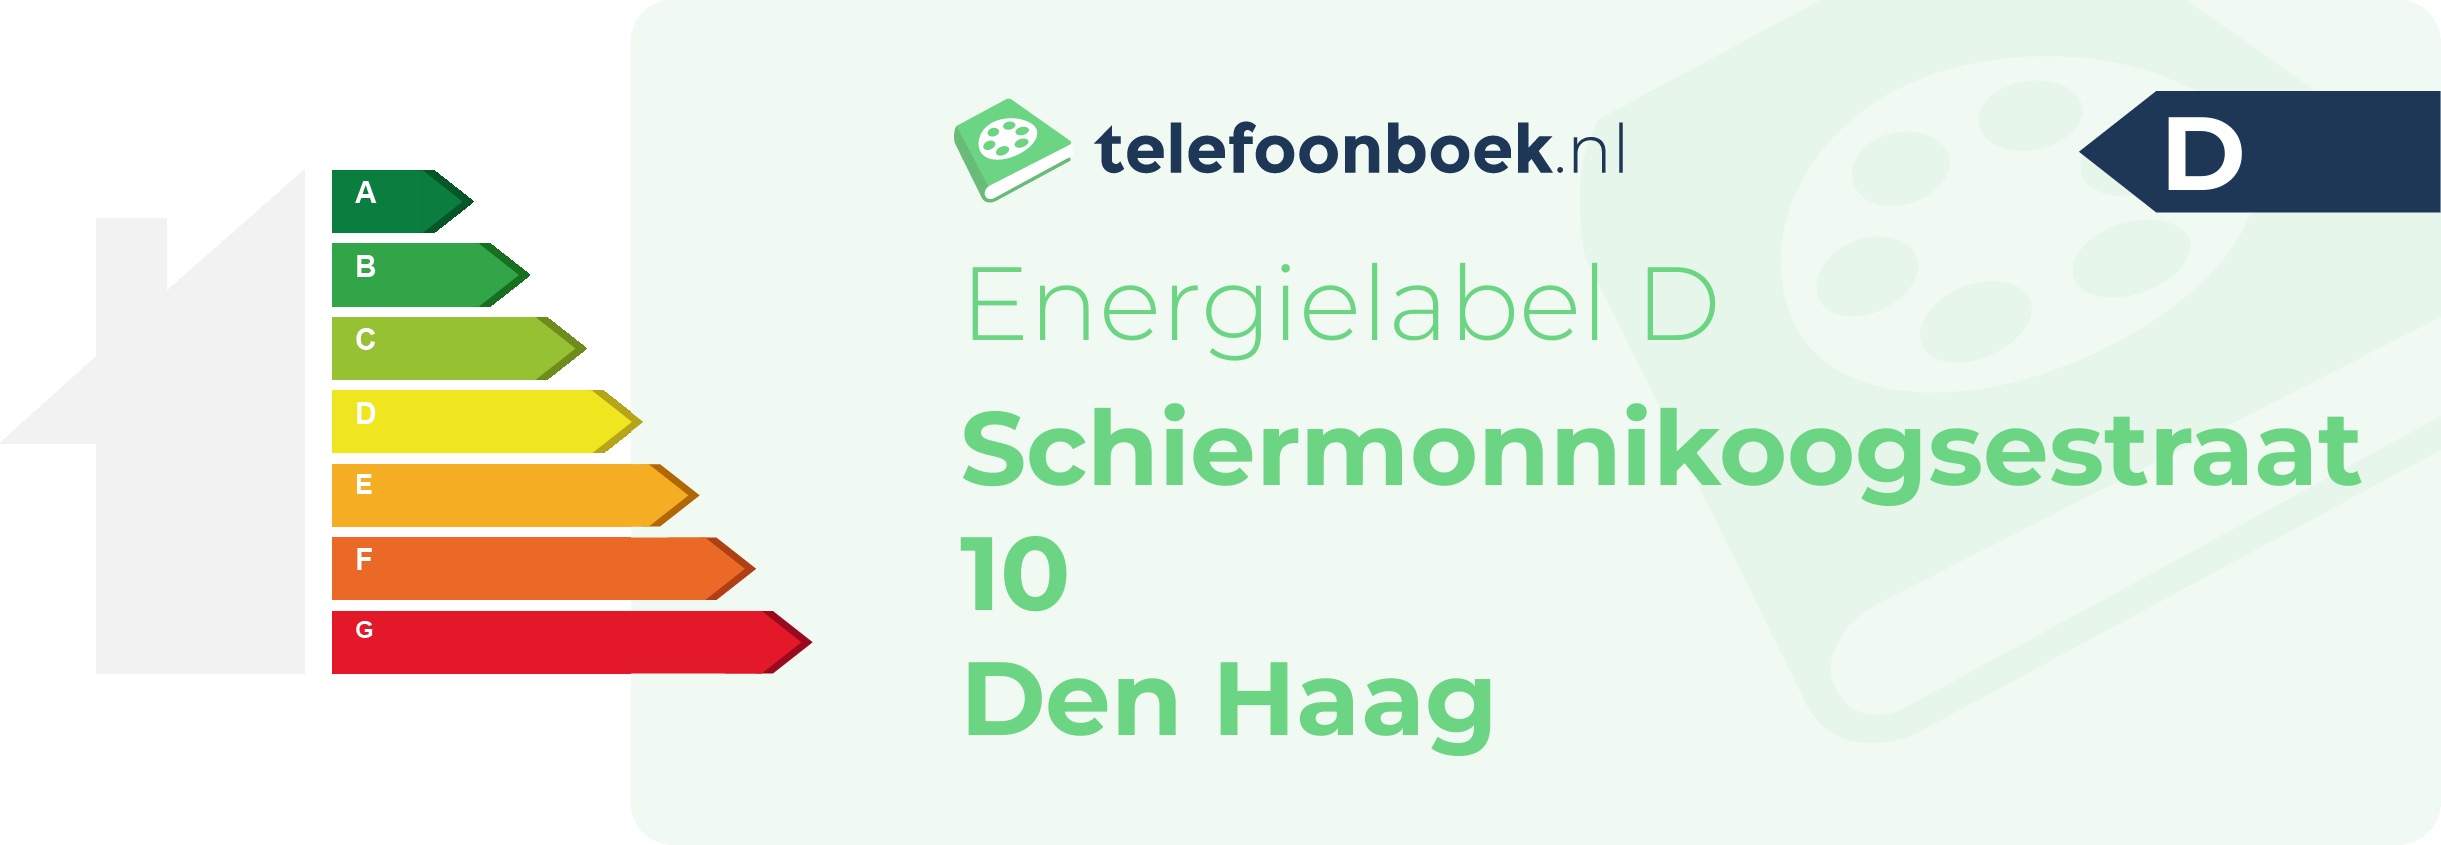 Energielabel Schiermonnikoogsestraat 10 Den Haag